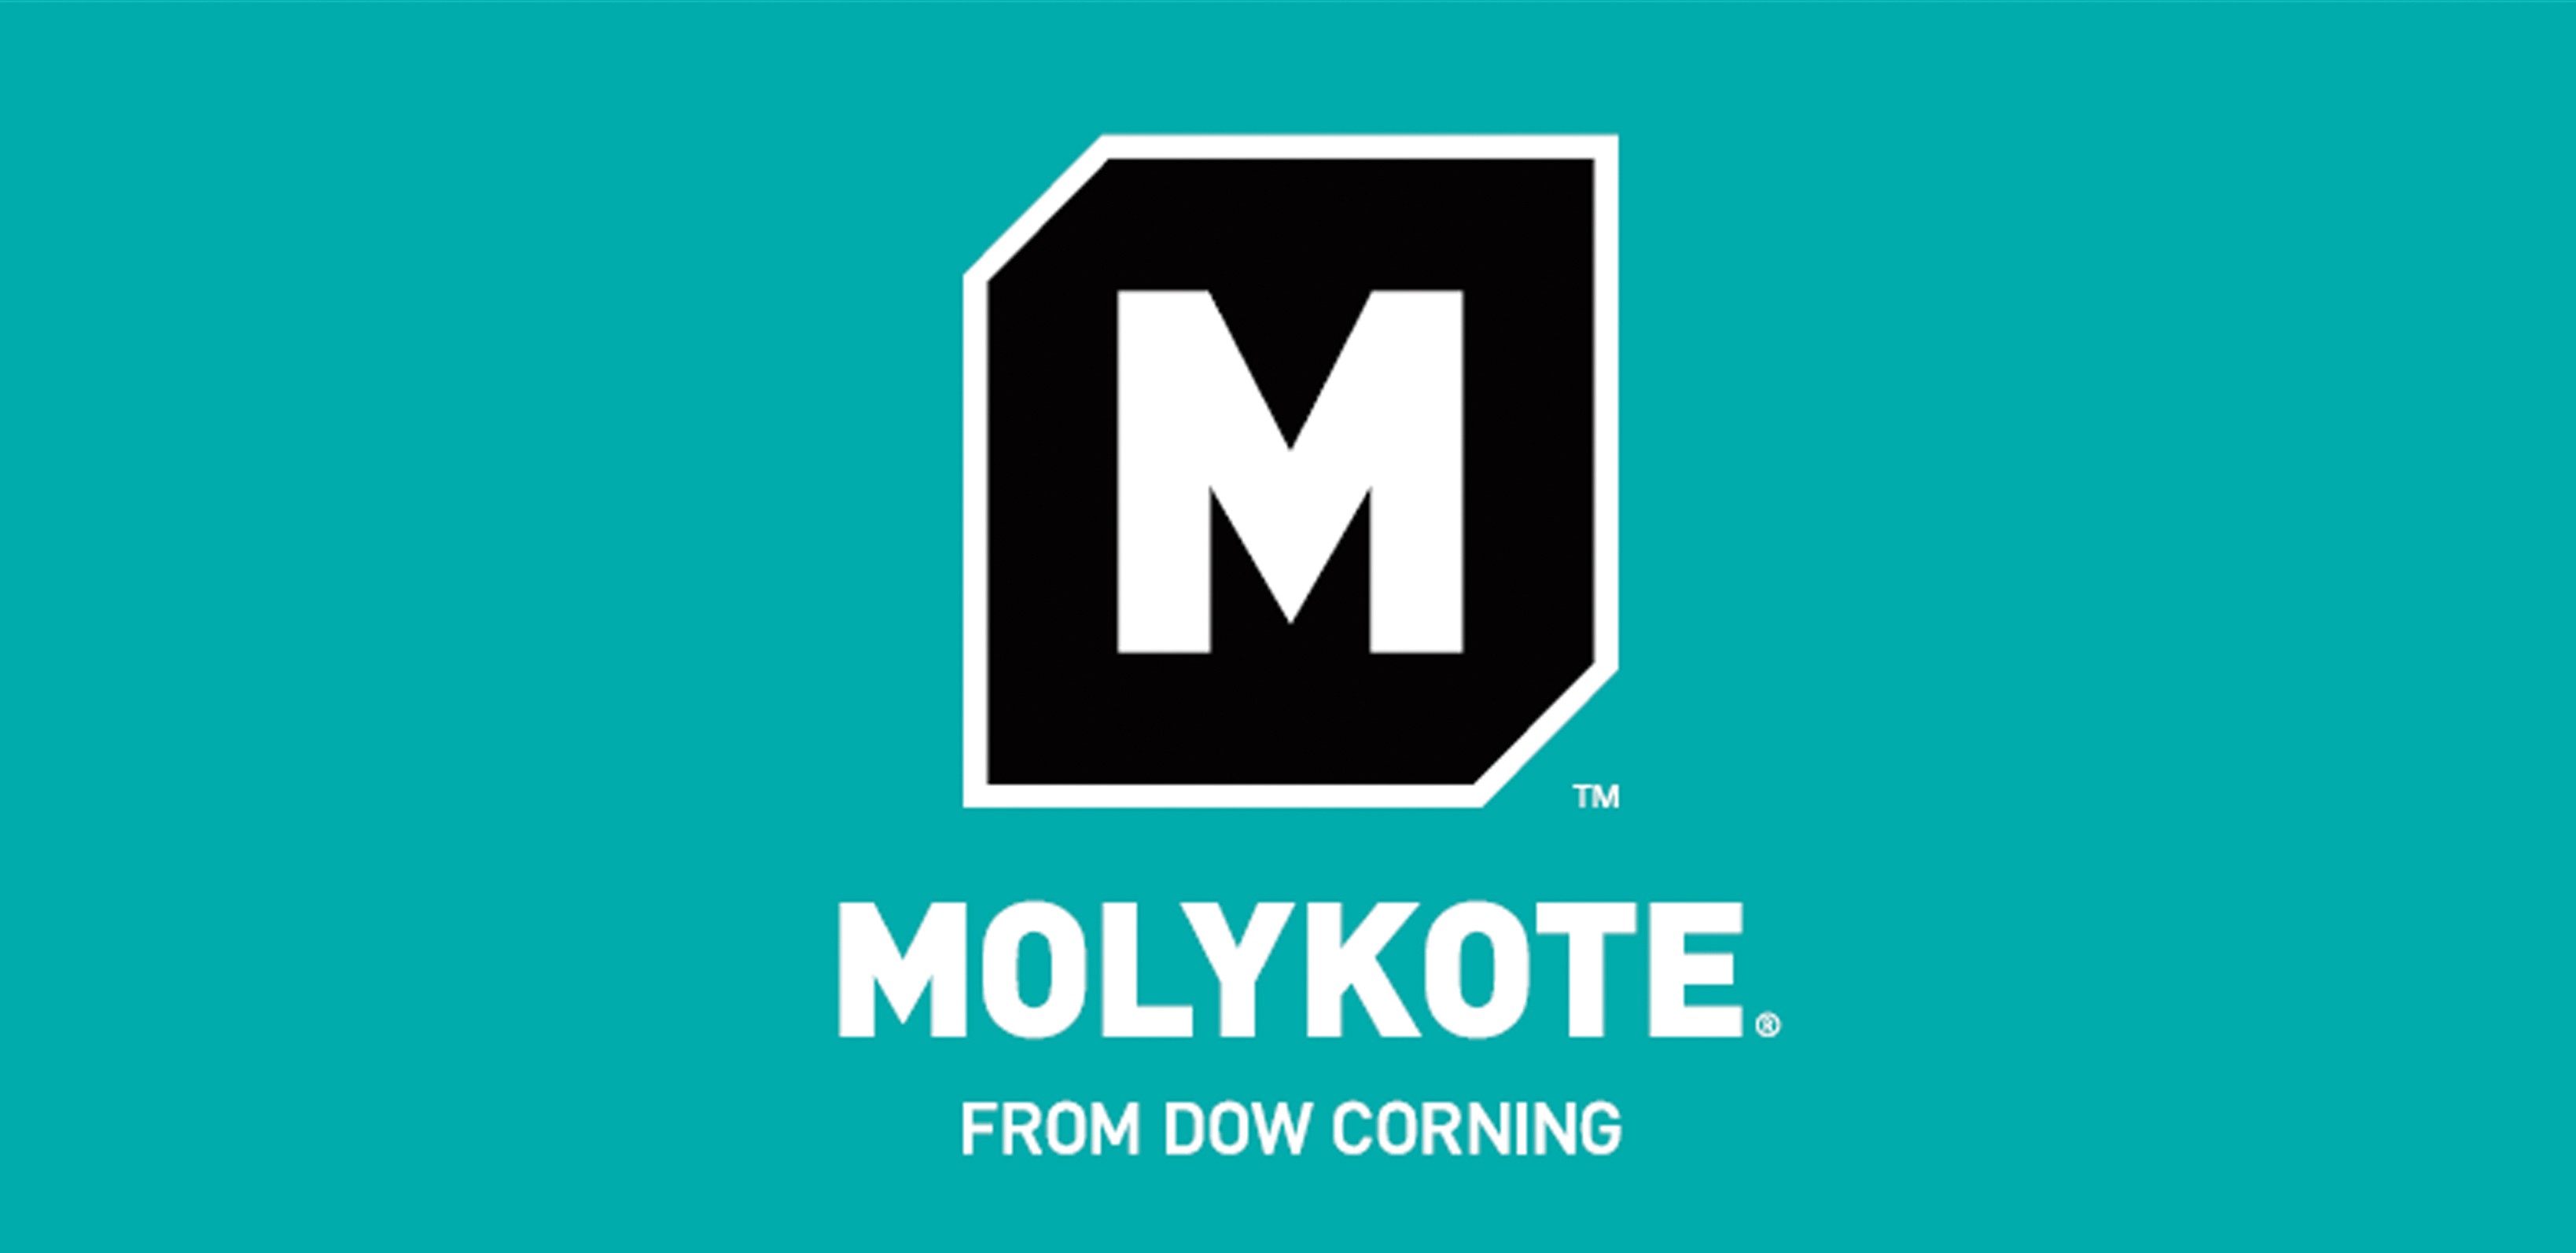 Molykote 55 O-Ring Graisse haute performance 100g tube - achat en ligne